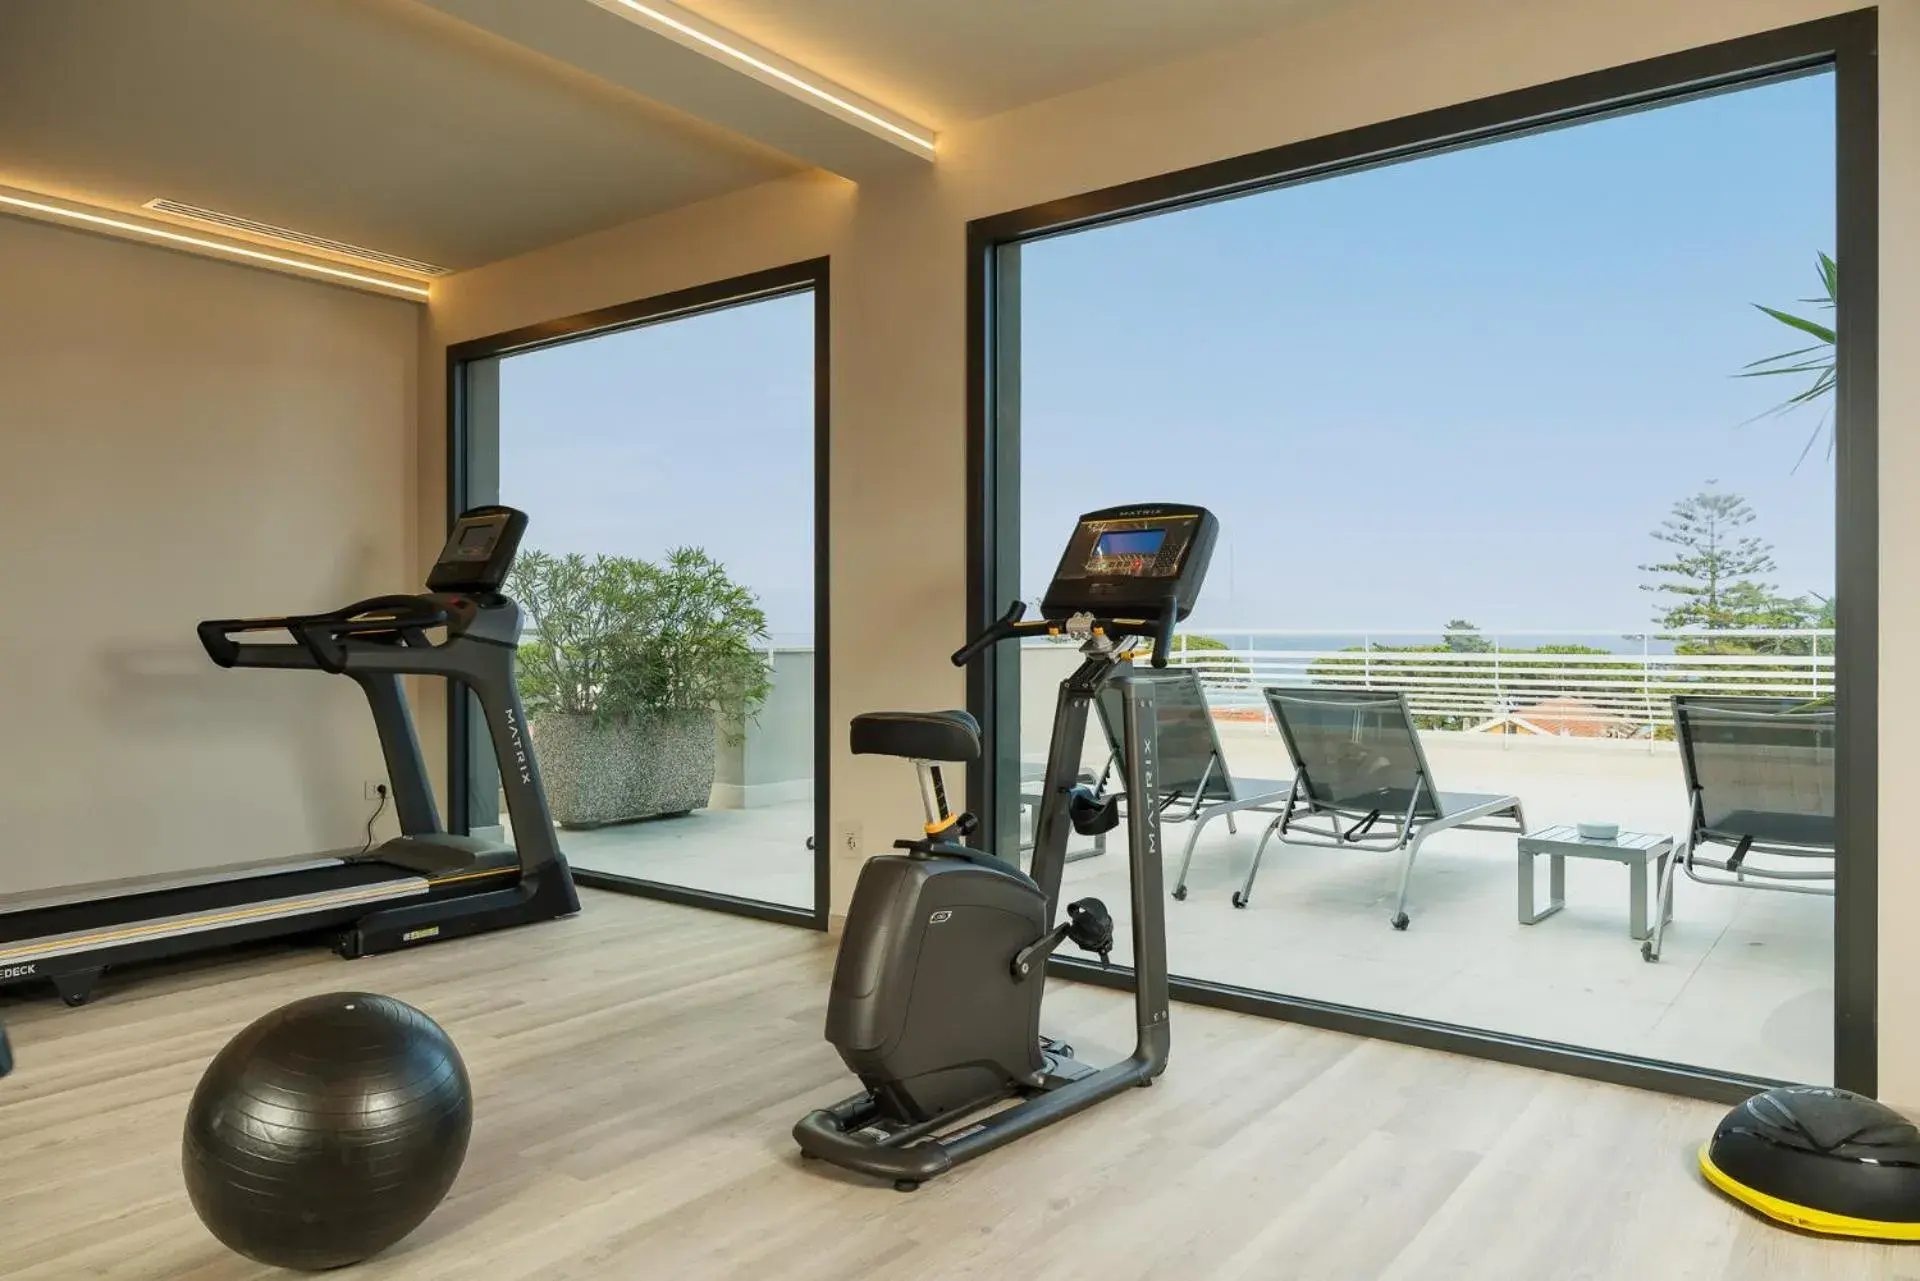 Fitness centre/facilities, Fitness Center/Facilities in Hotel Corallo